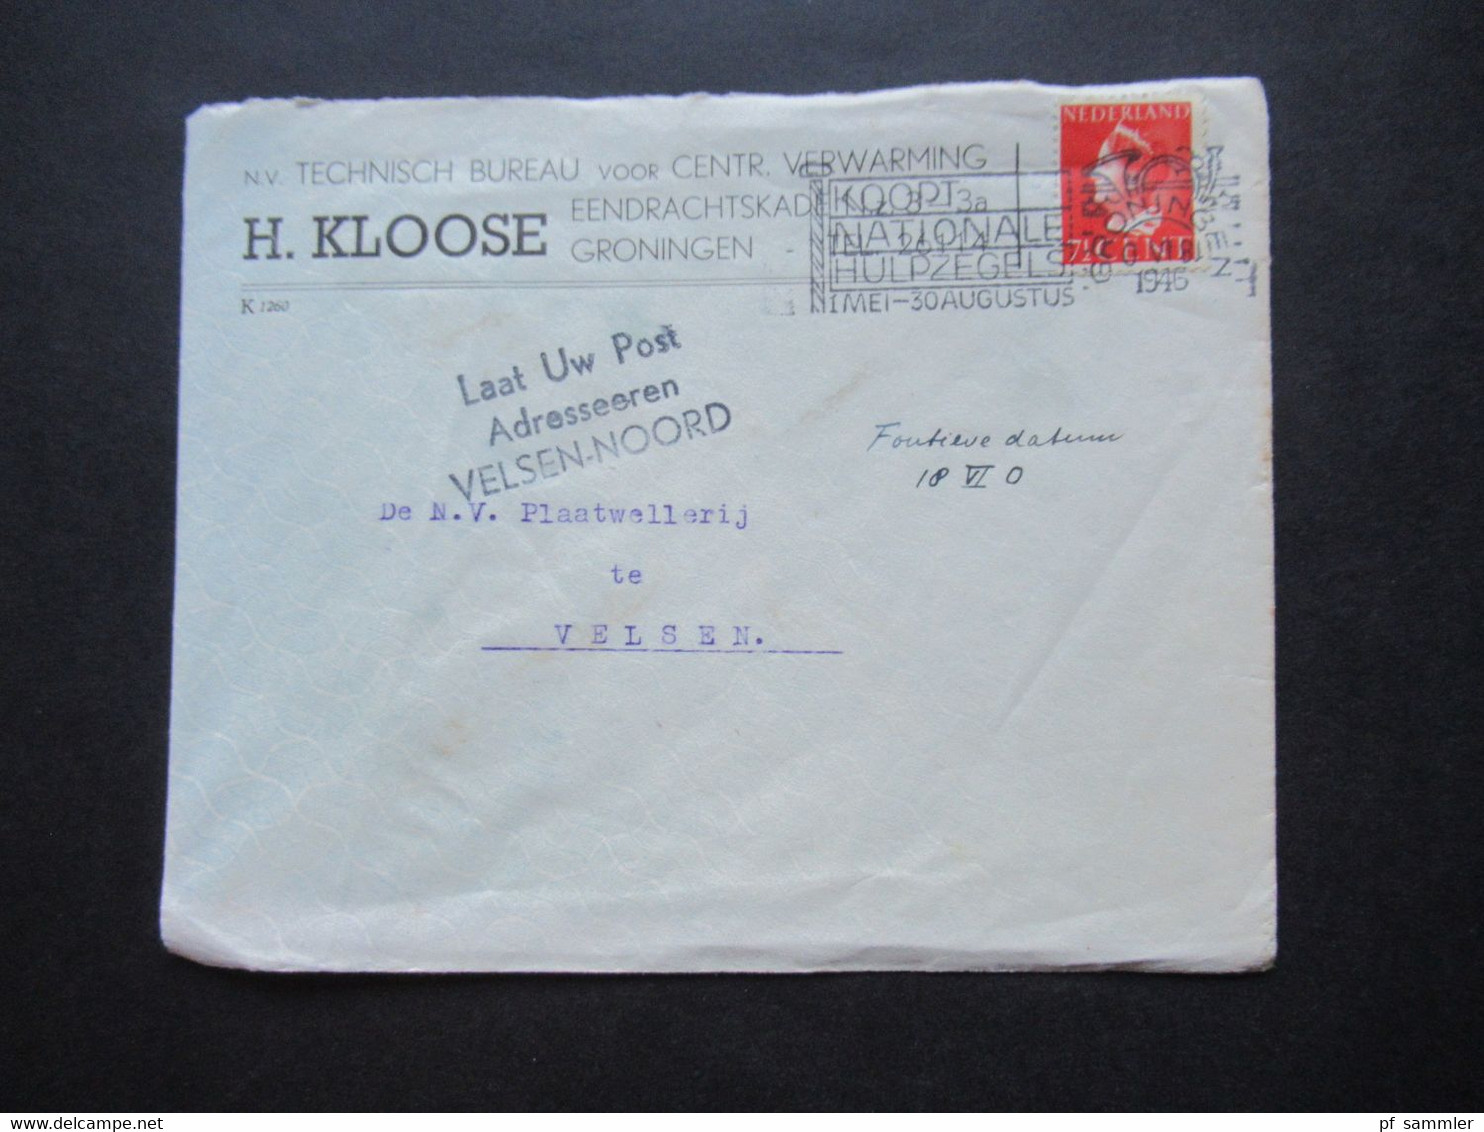 Niederlande 1940 Verwendet 1946 Königin Wilhelmina Nr.342 EF Nebenstempel L3 Laat Uw Post Adresseeren Velsen - Noord - Cartas & Documentos